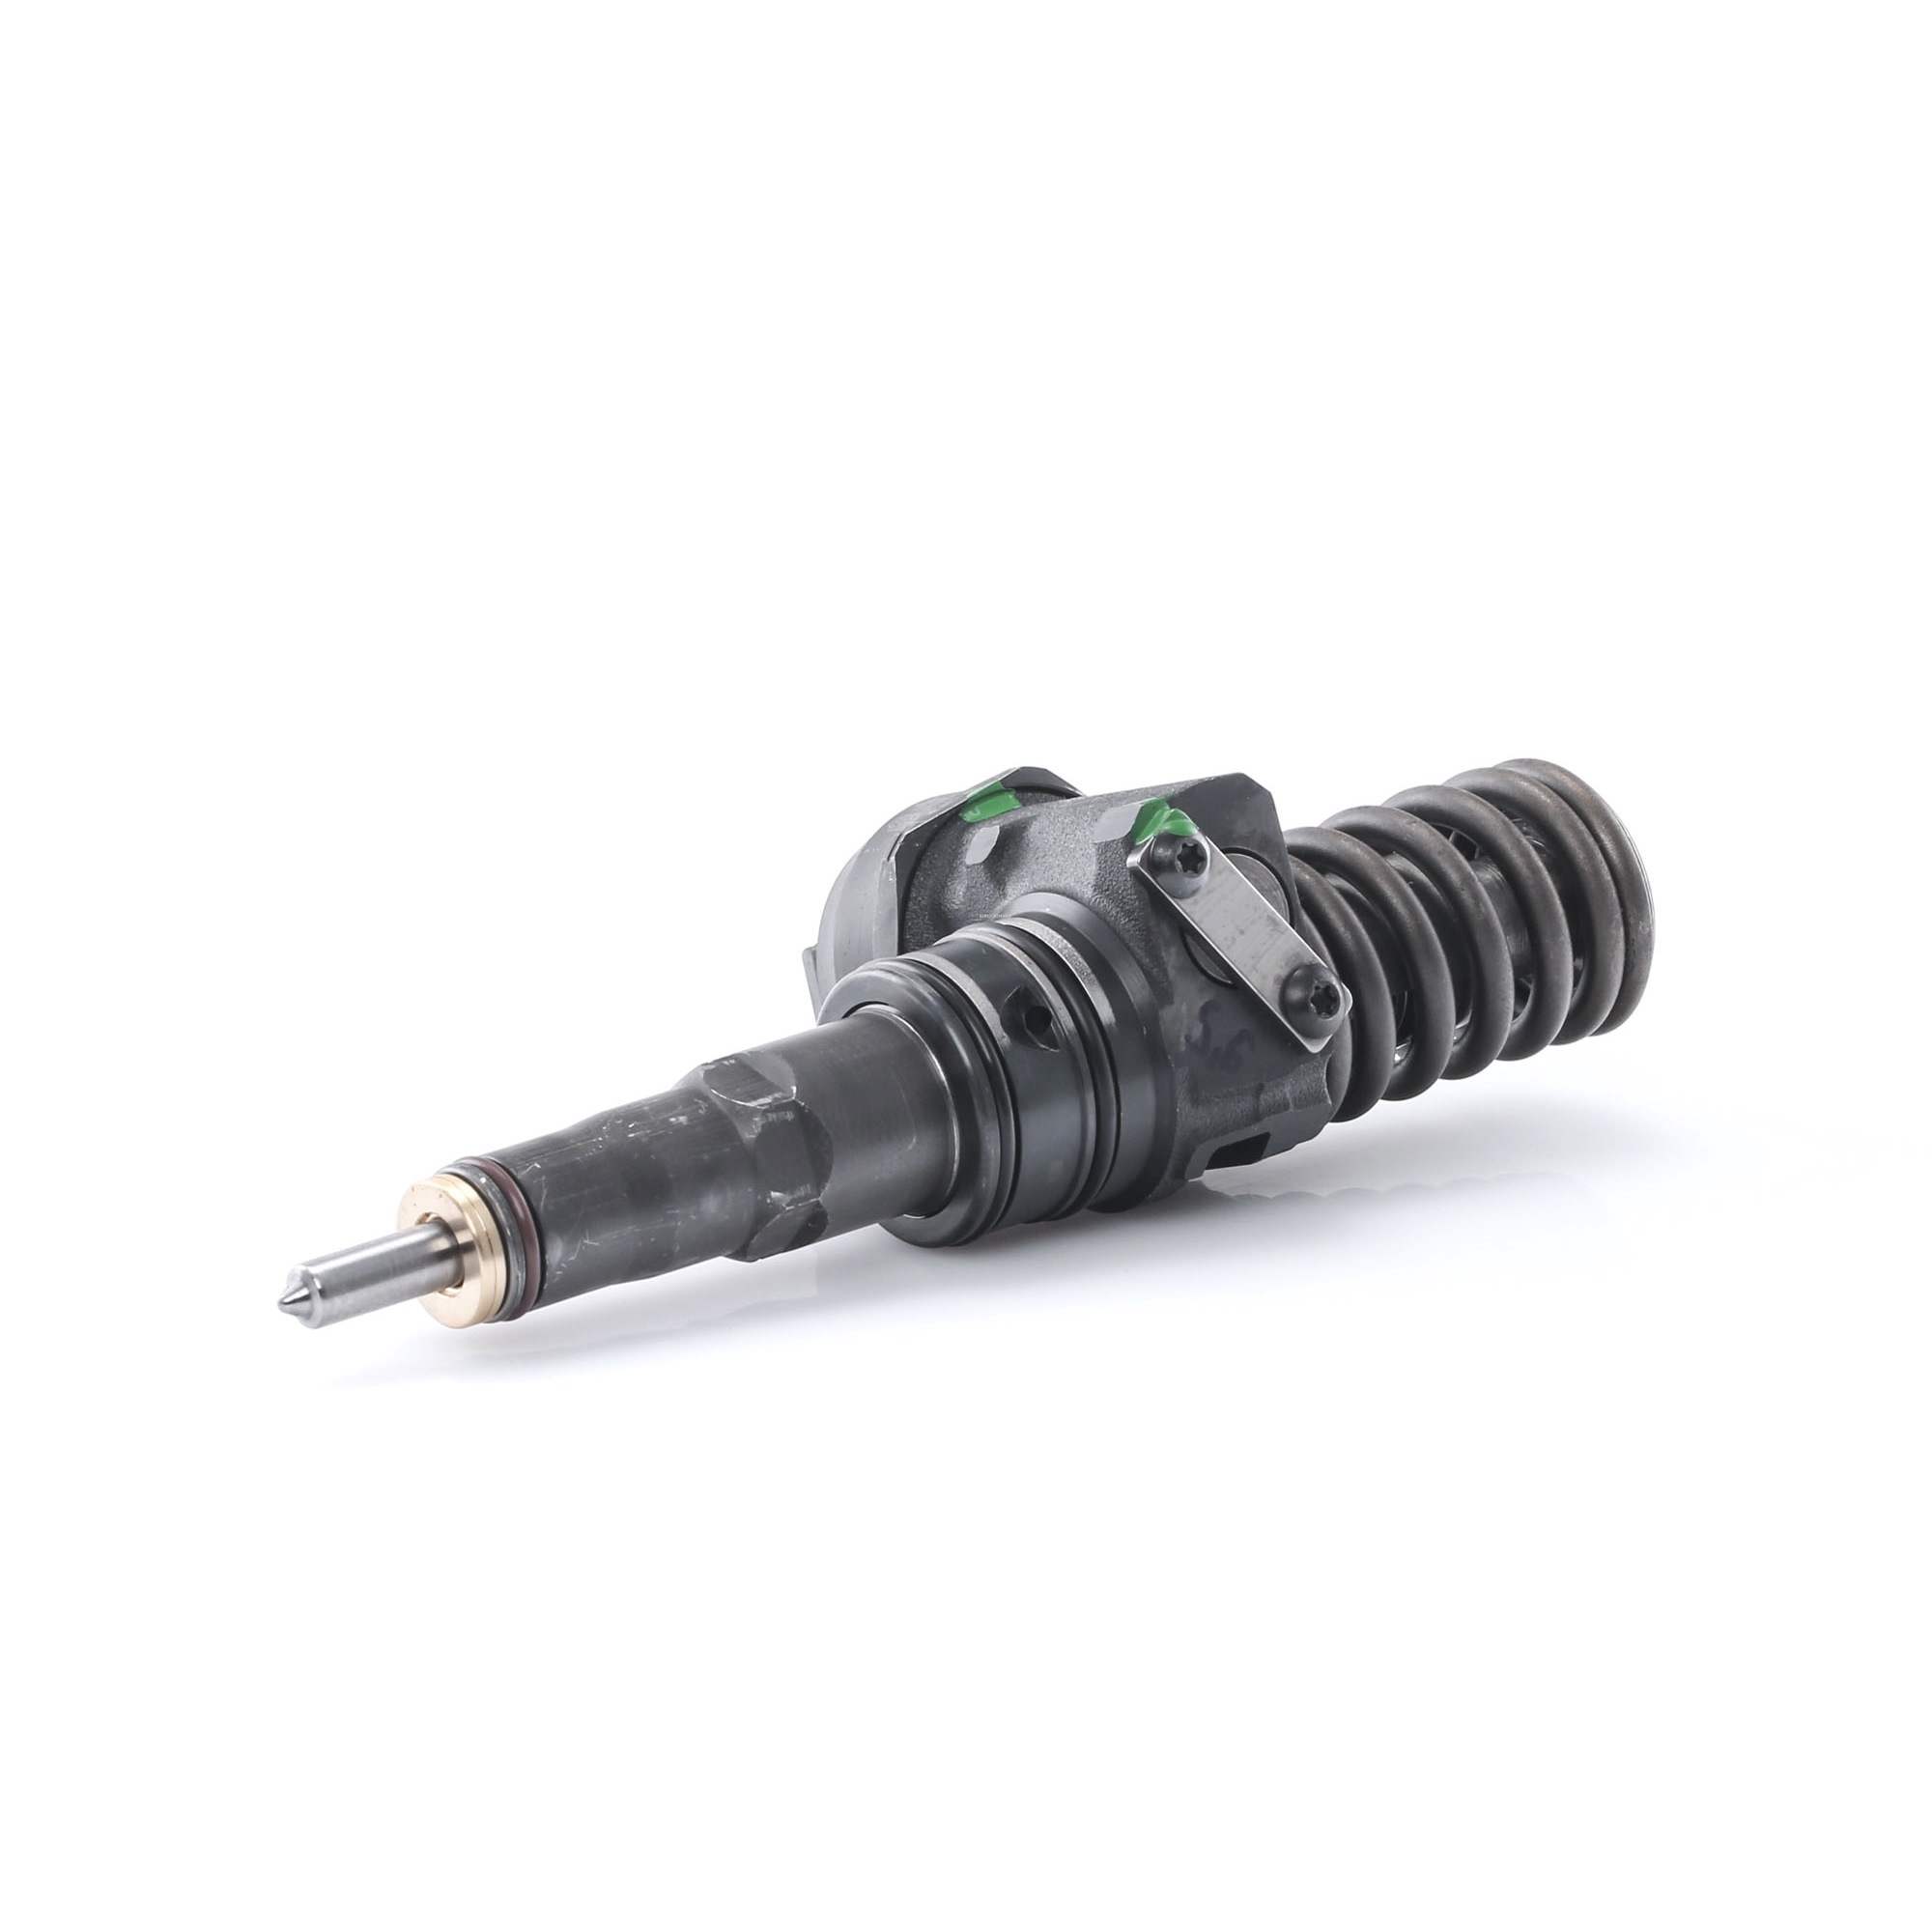 RIDEX REMAN Pump and Nozzle Unit 3930I0009R buy